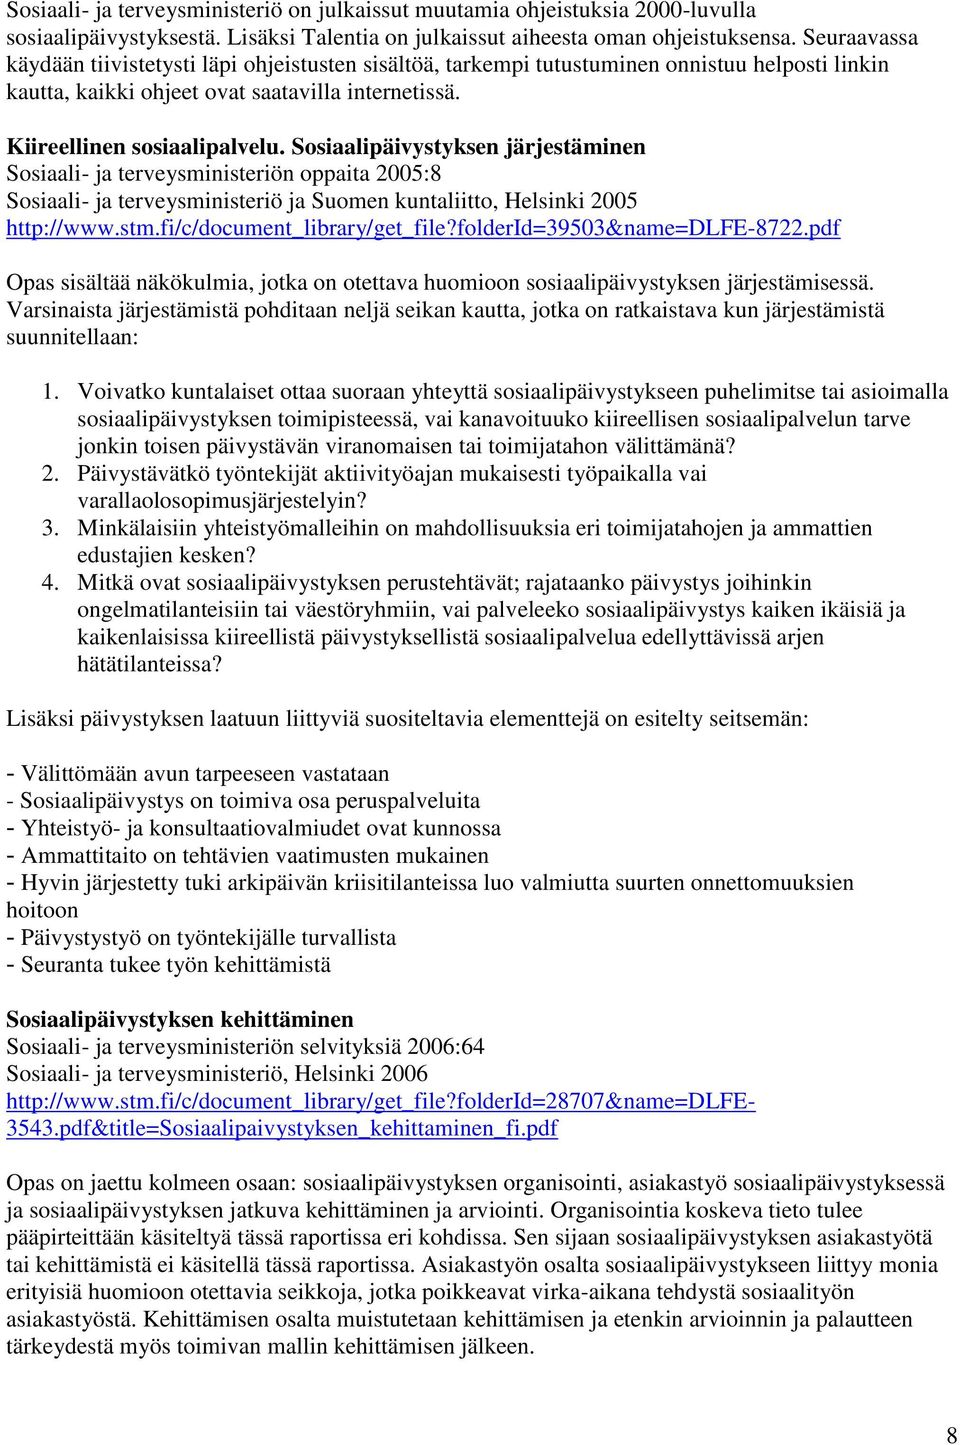 Sosiaalipäivystyksen järjestäminen Sosiaali- ja terveysministeriön oppaita 2005:8 Sosiaali- ja terveysministeriö ja Suomen kuntaliitto, Helsinki 2005 http://www.stm.fi/c/document_library/get_file?